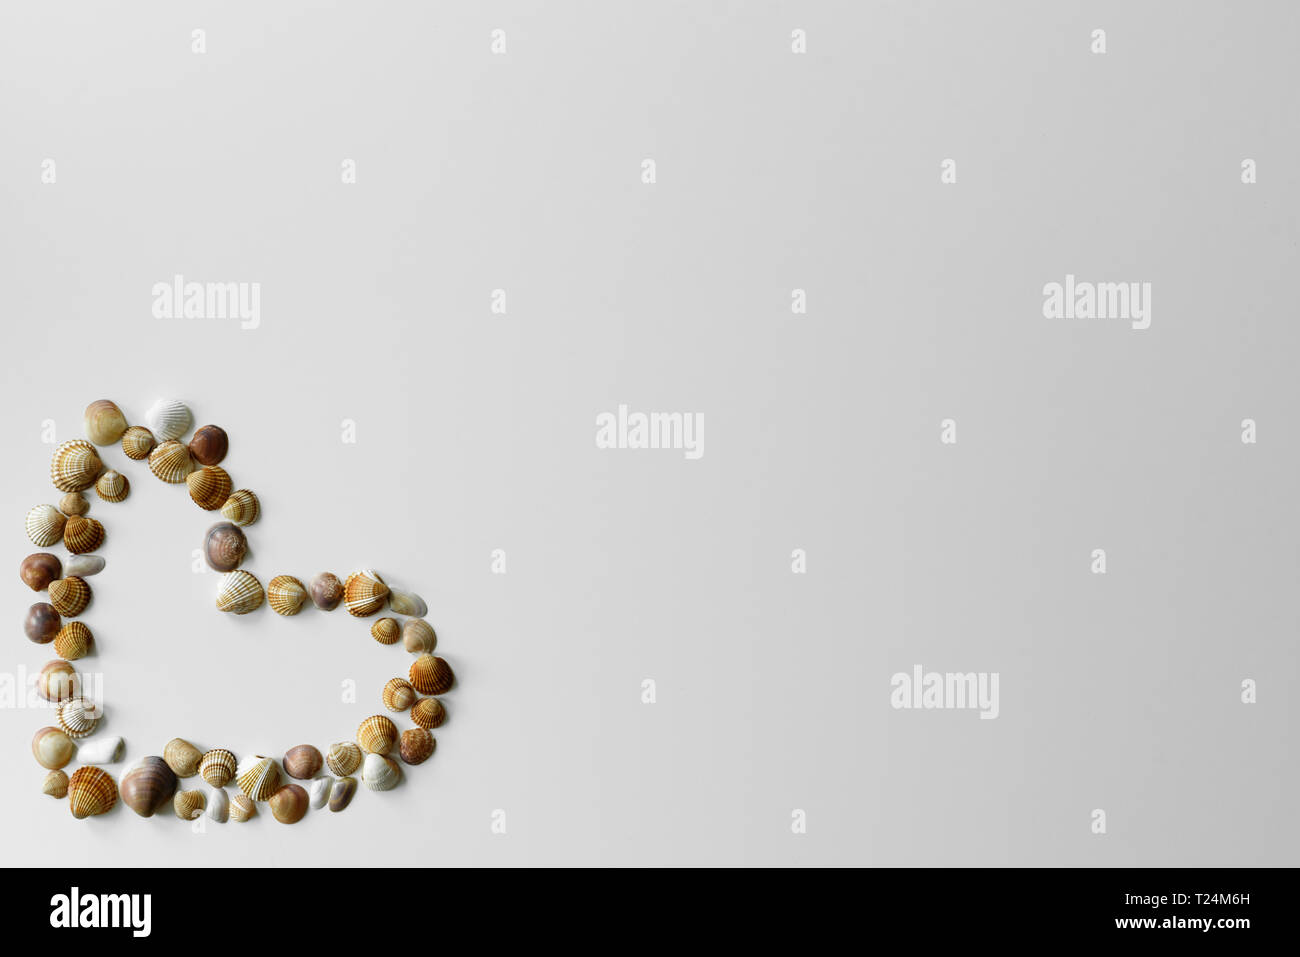 Liebe Symbol - Herz ab Sommer Muscheln mit Kopie Raum auf weißem Hintergrund erstellt. Stockfoto